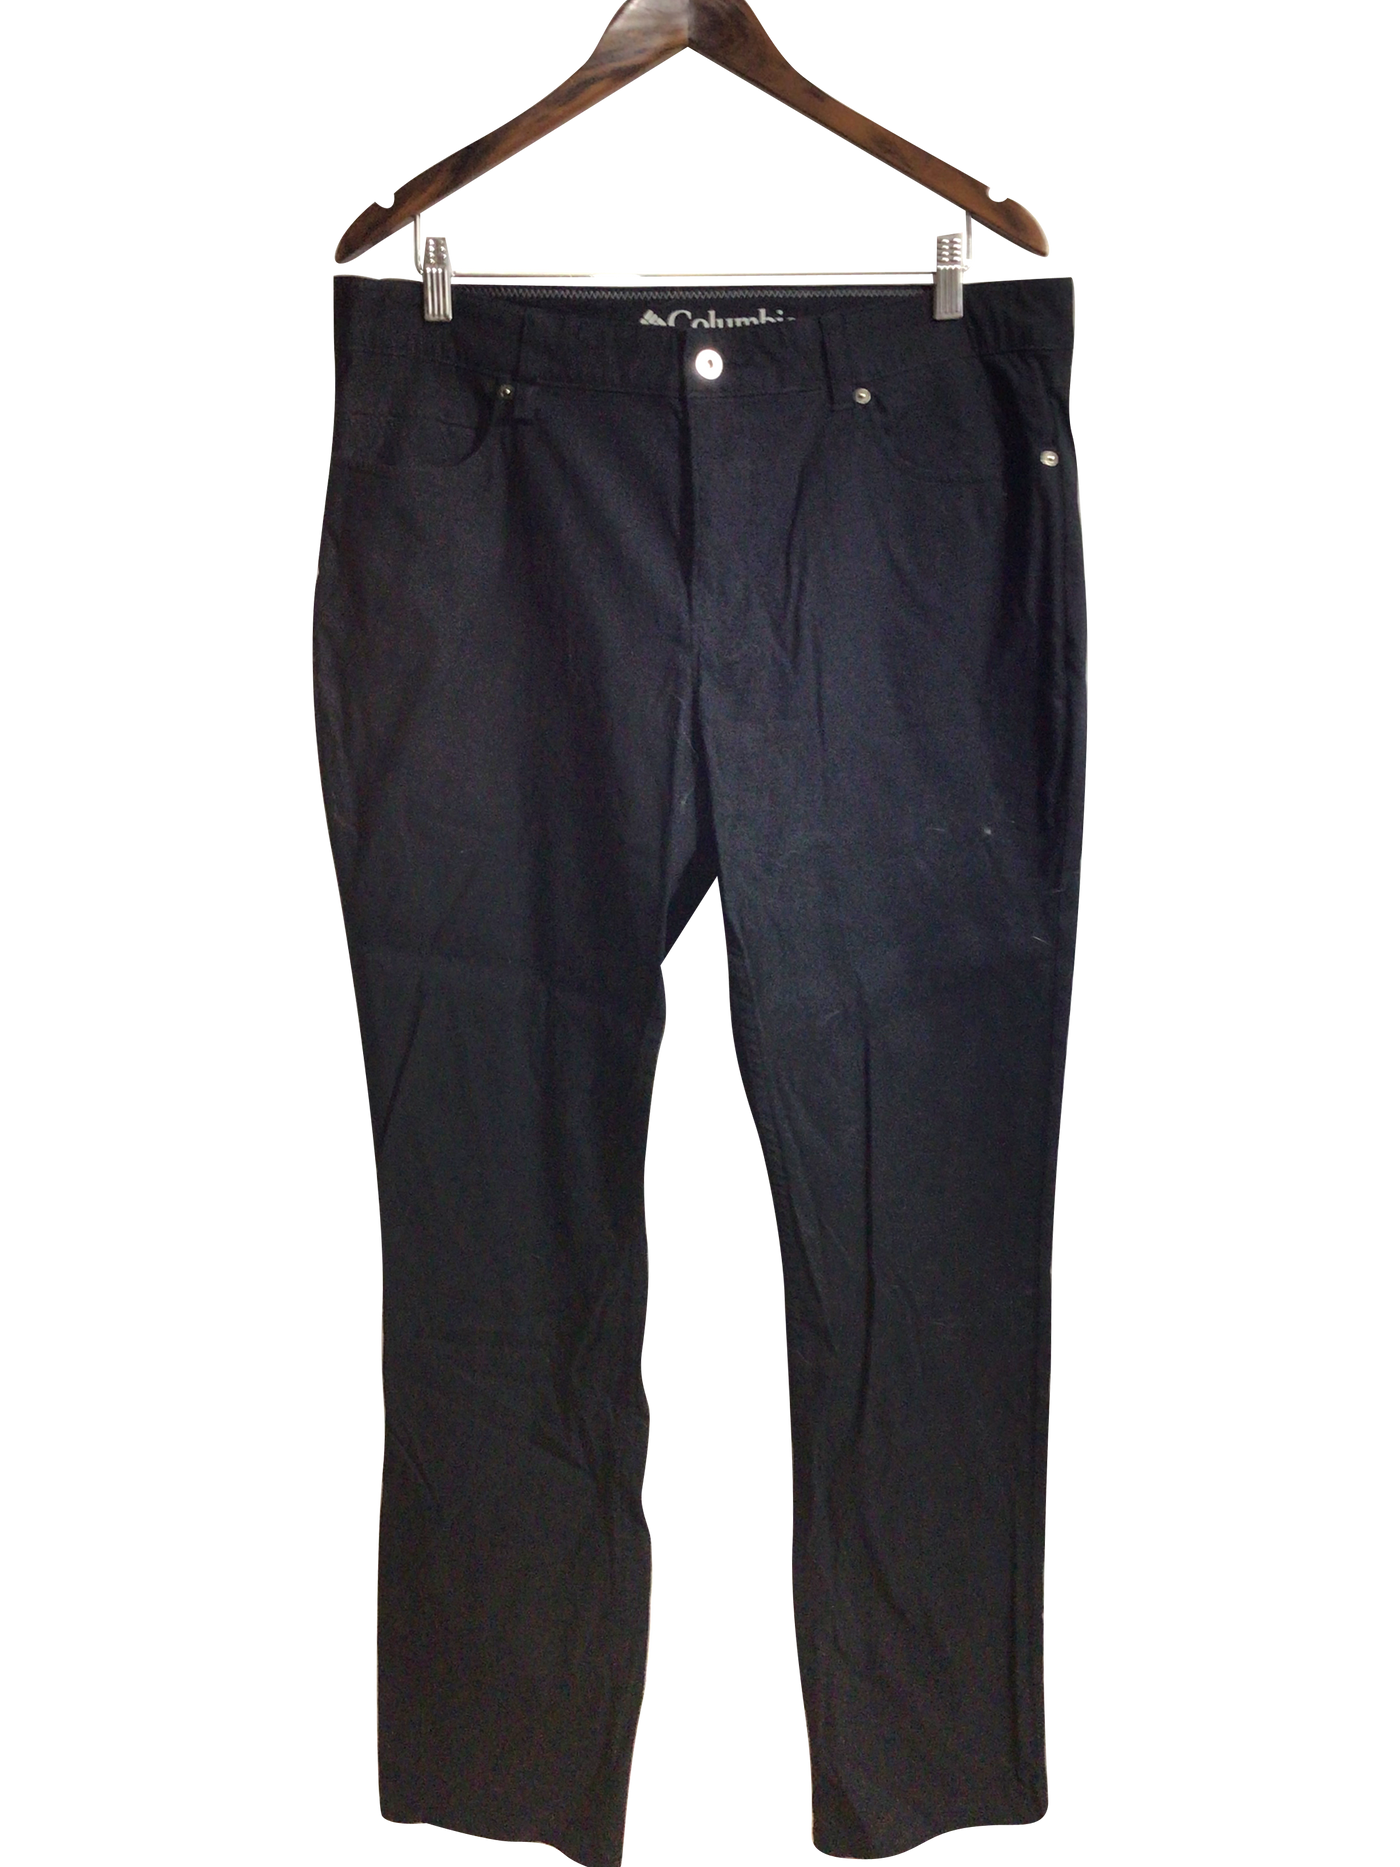 COLUMBIA Women Work Pants Regular fit in Black - Size 34x32 | 24.29 $ KOOP